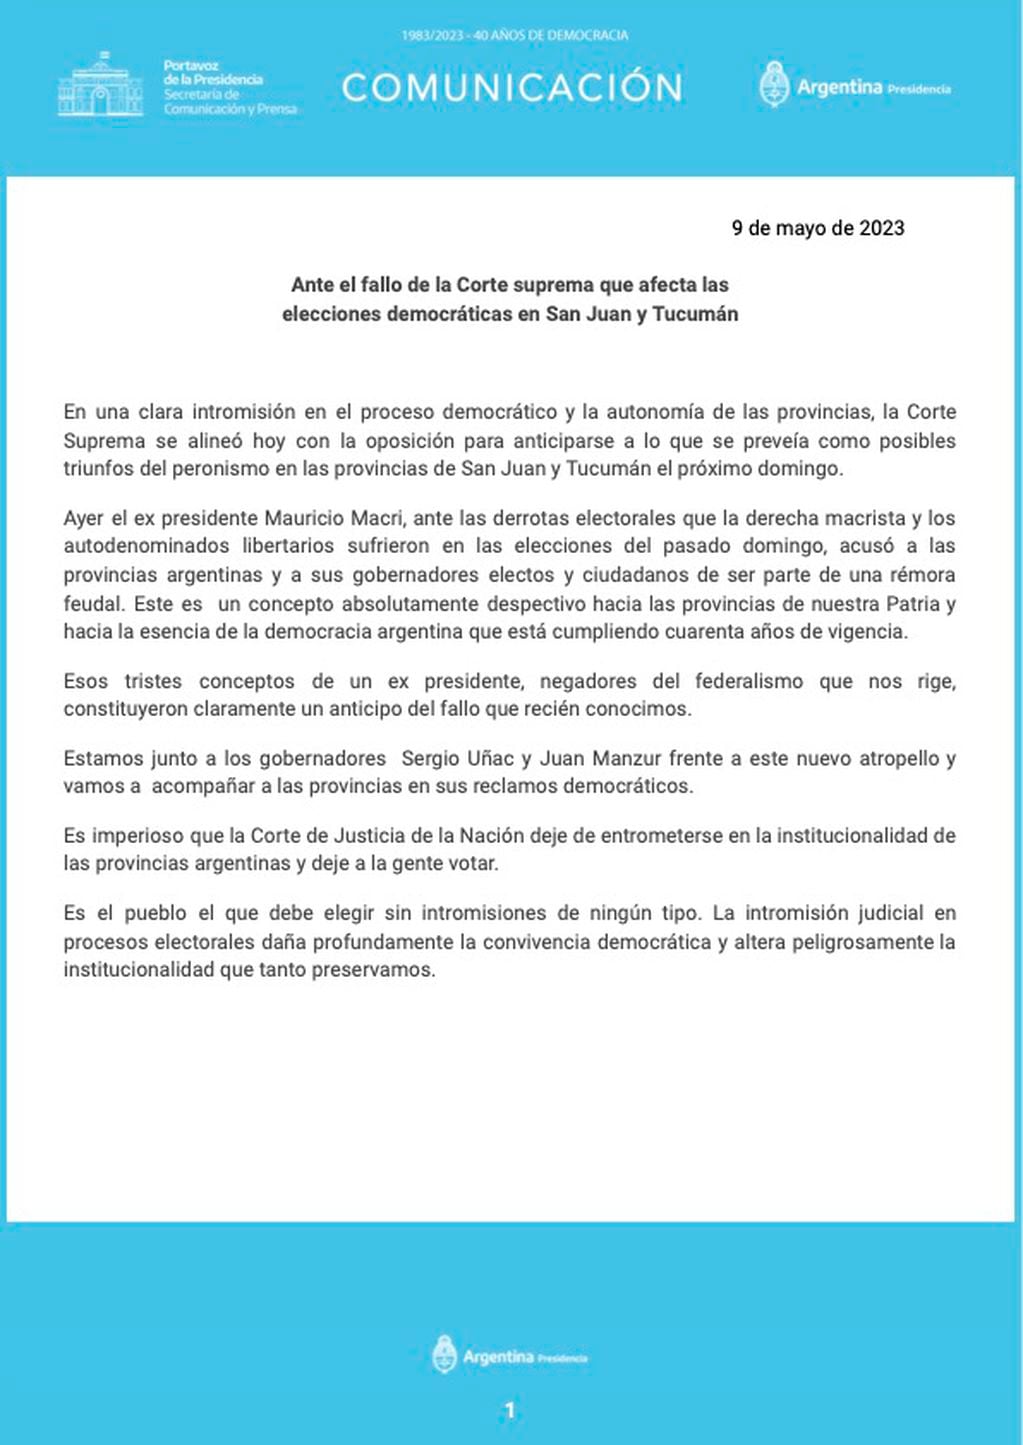 Comunicado del gobierno tras la decisión de la Corte de suspender las elecciones en Tucumán y San Juan. Fuente: Casa Rosada.